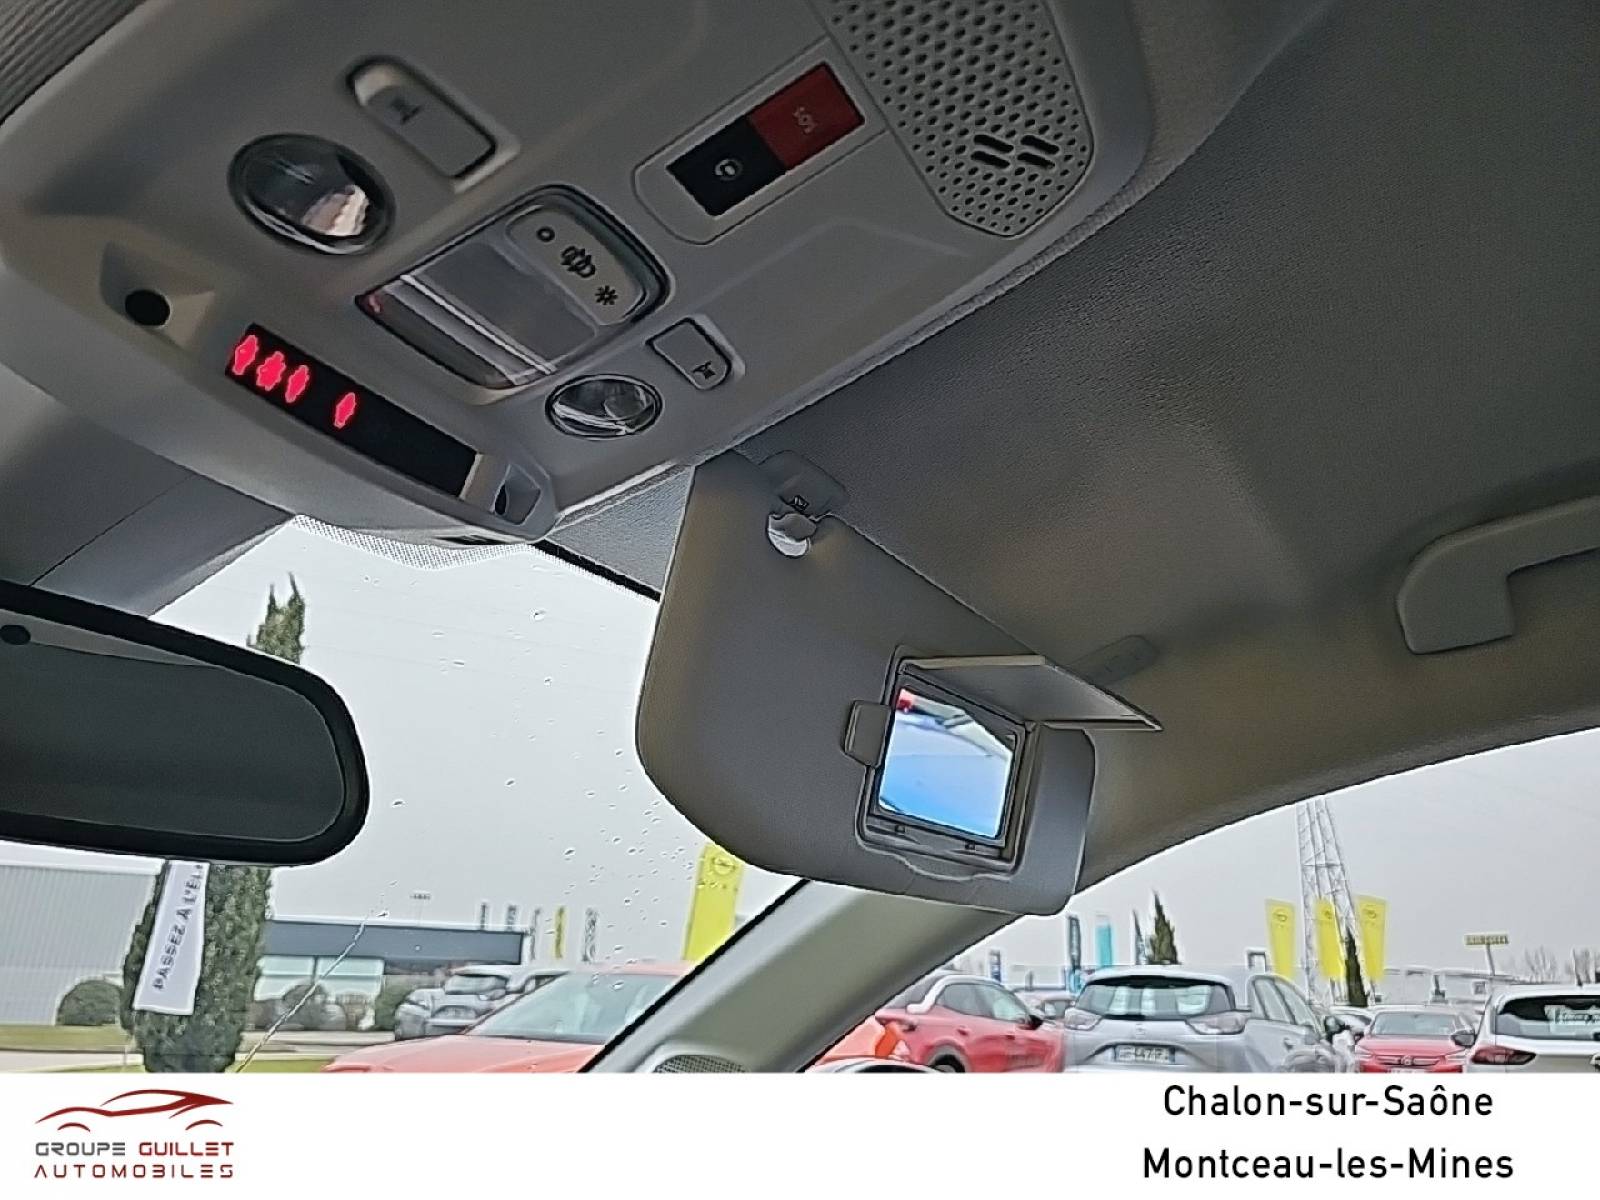 OPEL Corsa Electrique 136 ch & Batterie 50 kWh - véhicule d'occasion - Groupe Guillet - Opel Magicauto Chalon - 71380 - Saint-Marcel - 38